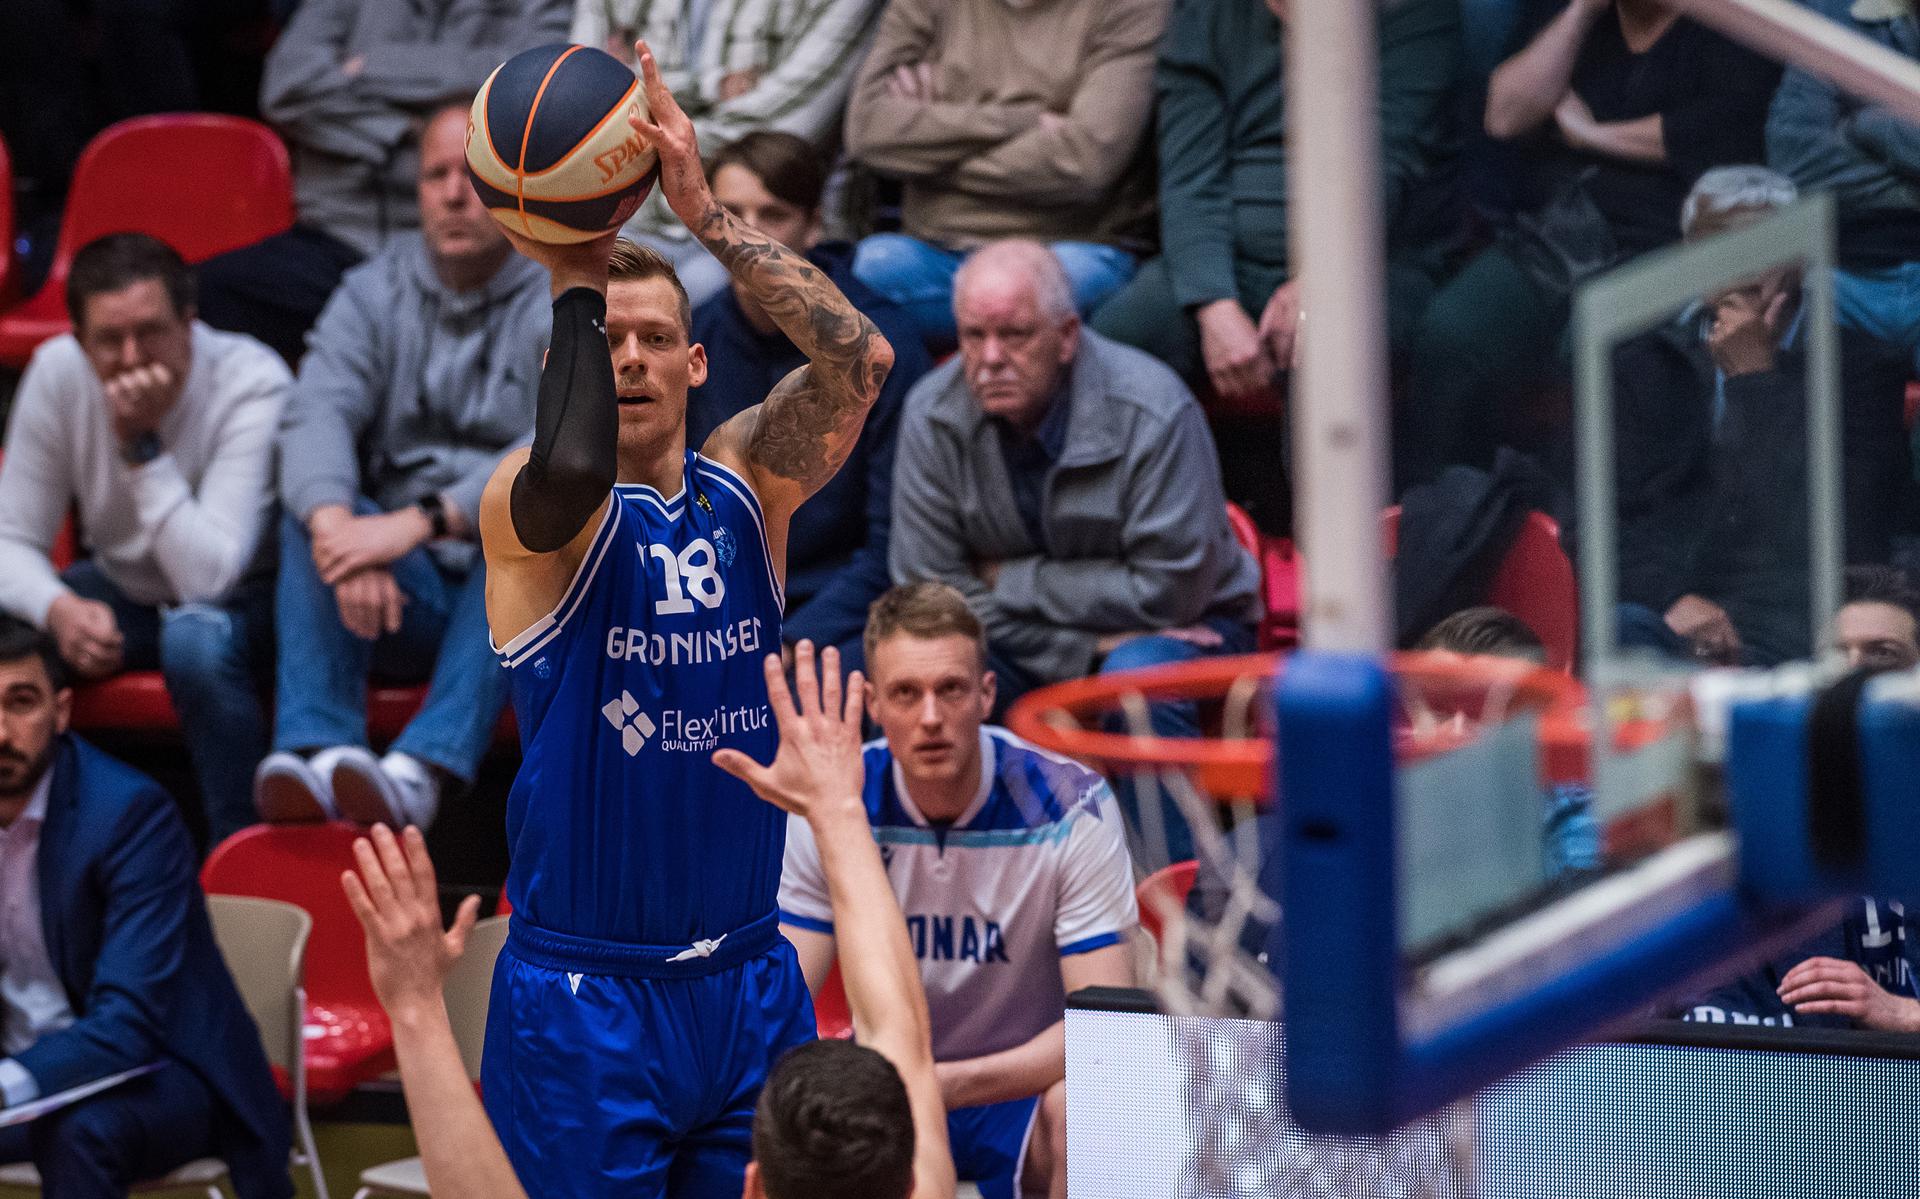 Donar-speler Viktor Gaddefors legt aan voor een schot op de basket van Den Bosch.